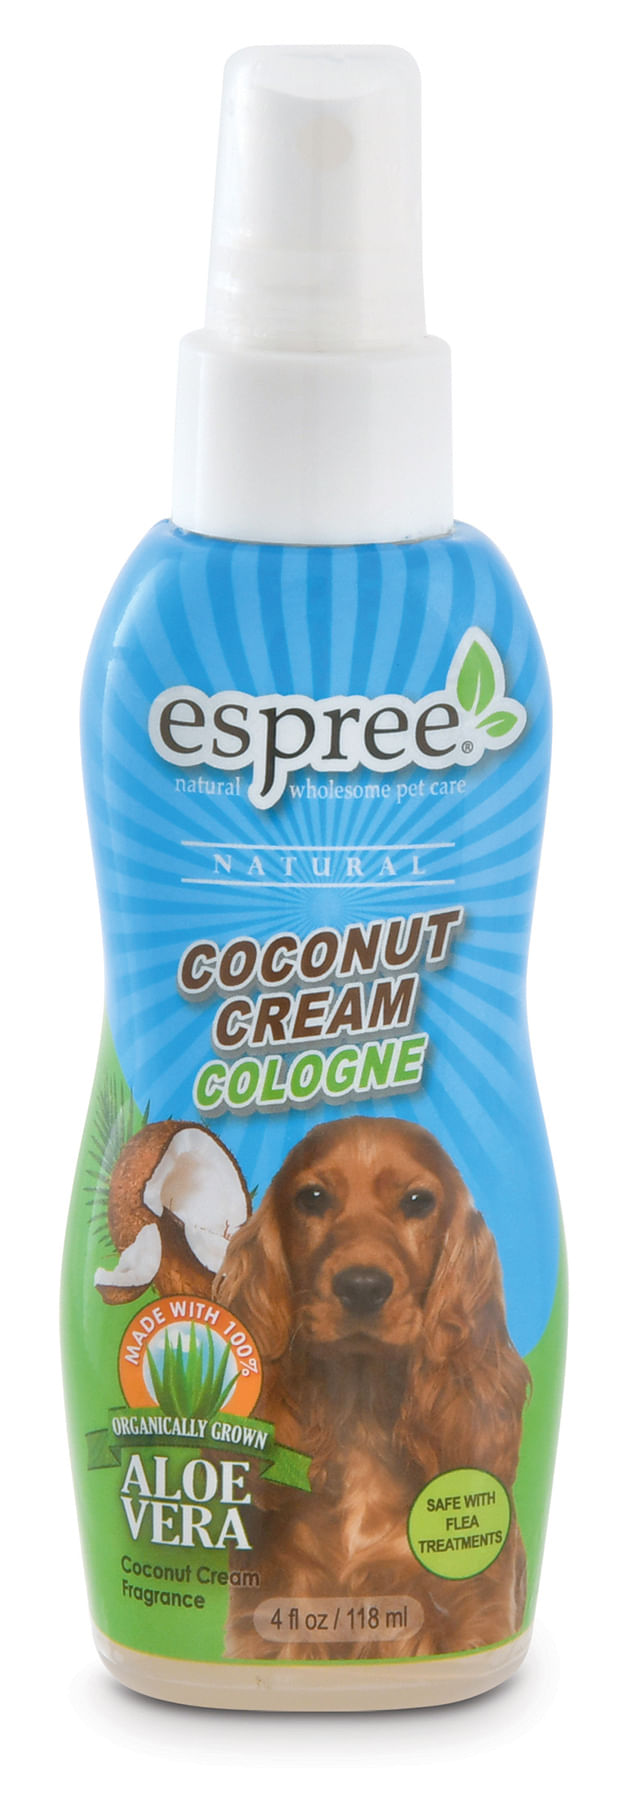 Espree-Coconut-Cream-Cologne